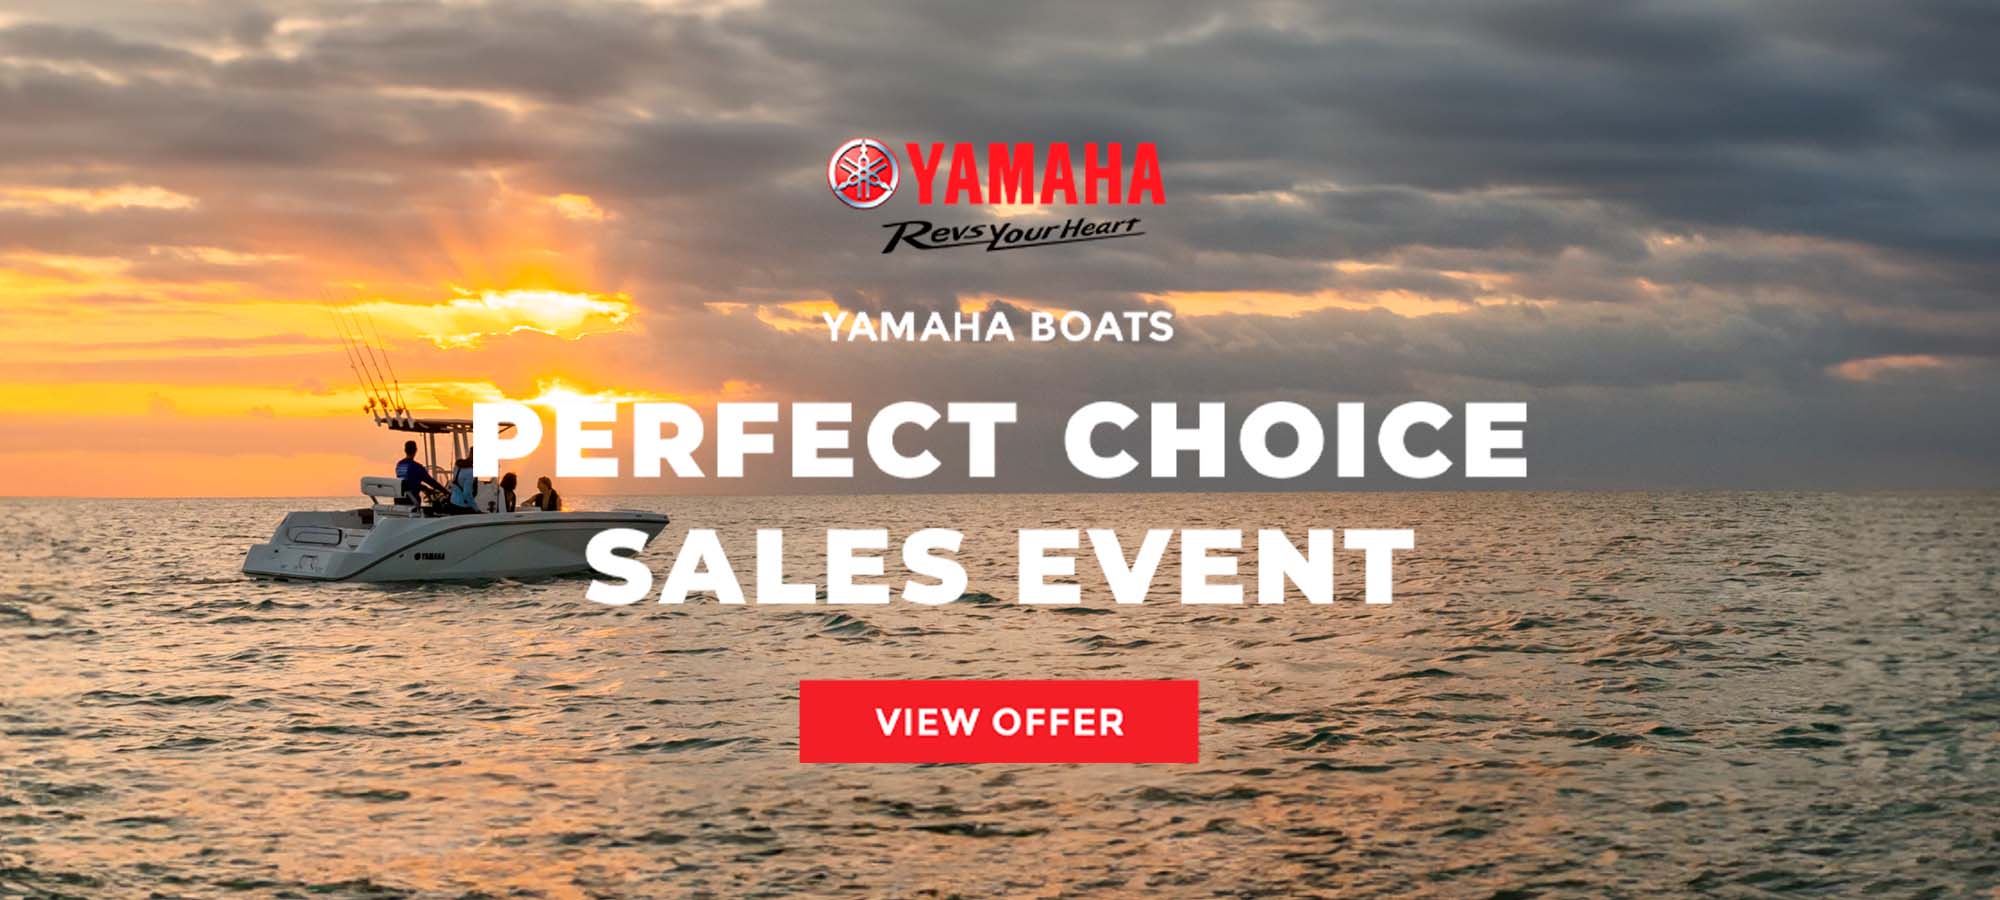 Yamaha US - Boats - PERFECT CHOICE SALES EVENT at Lynnwood Motoplex, Lynnwood, WA 98037